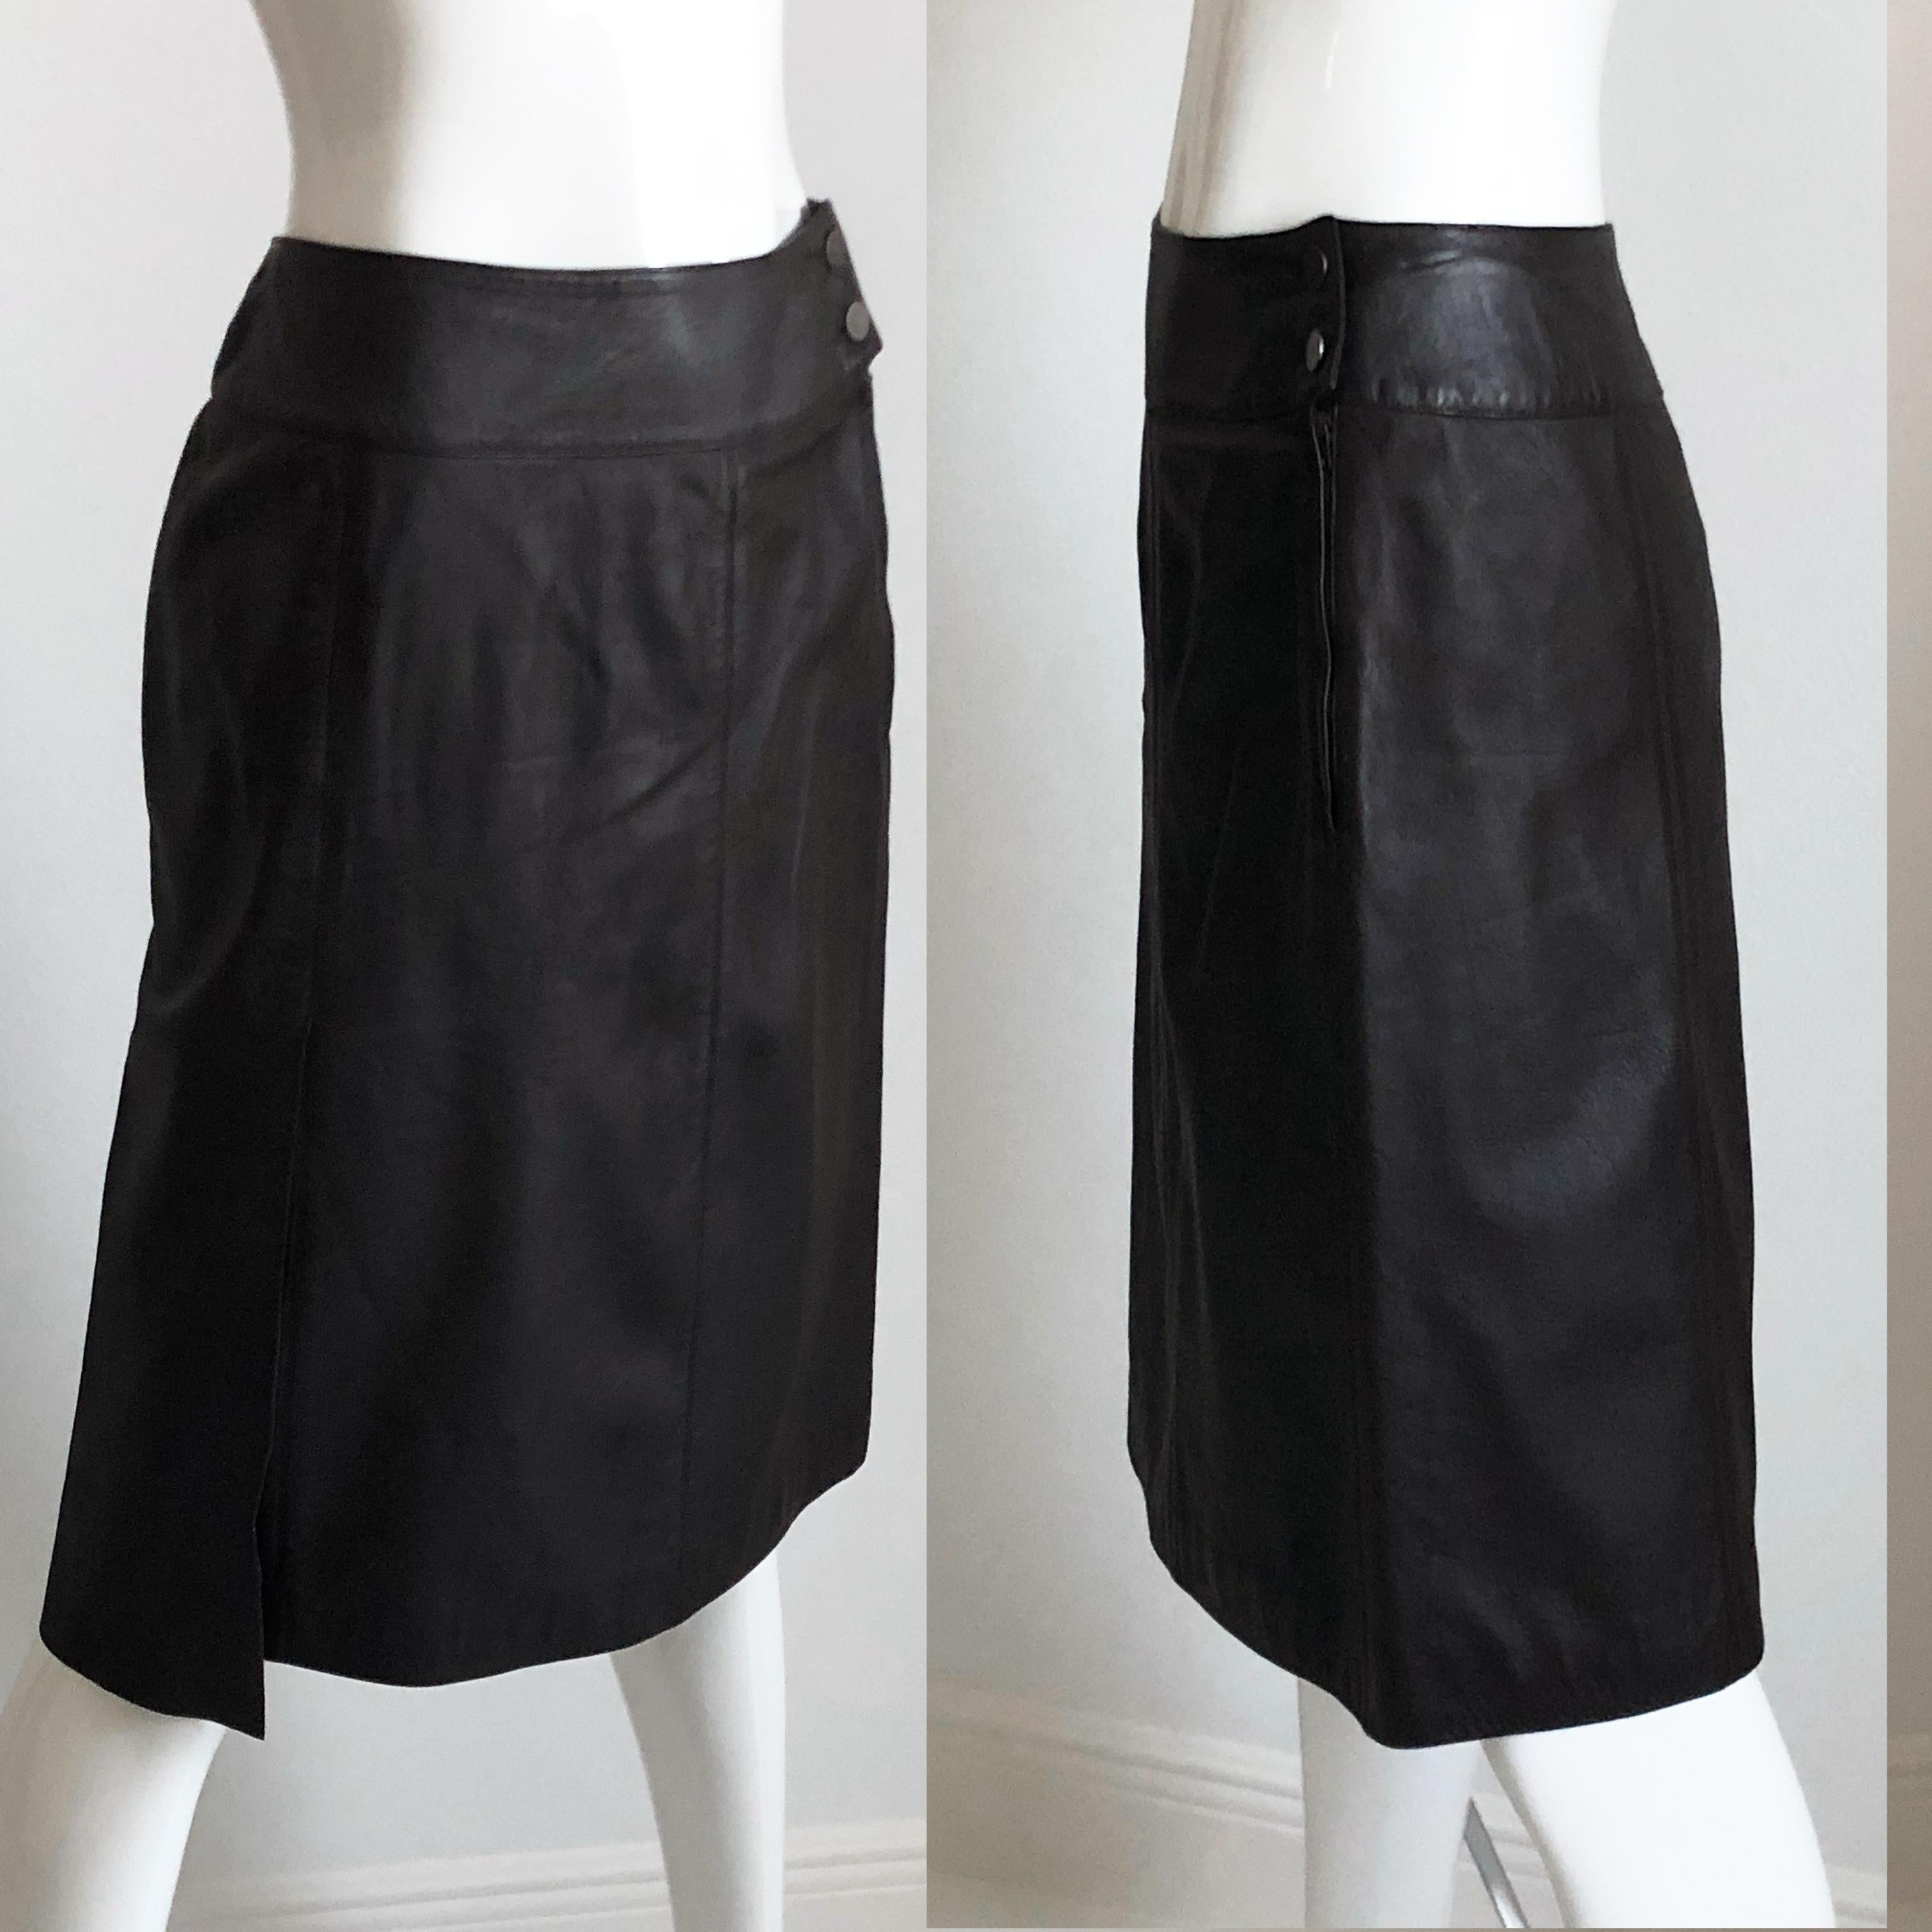 black chanel skirt